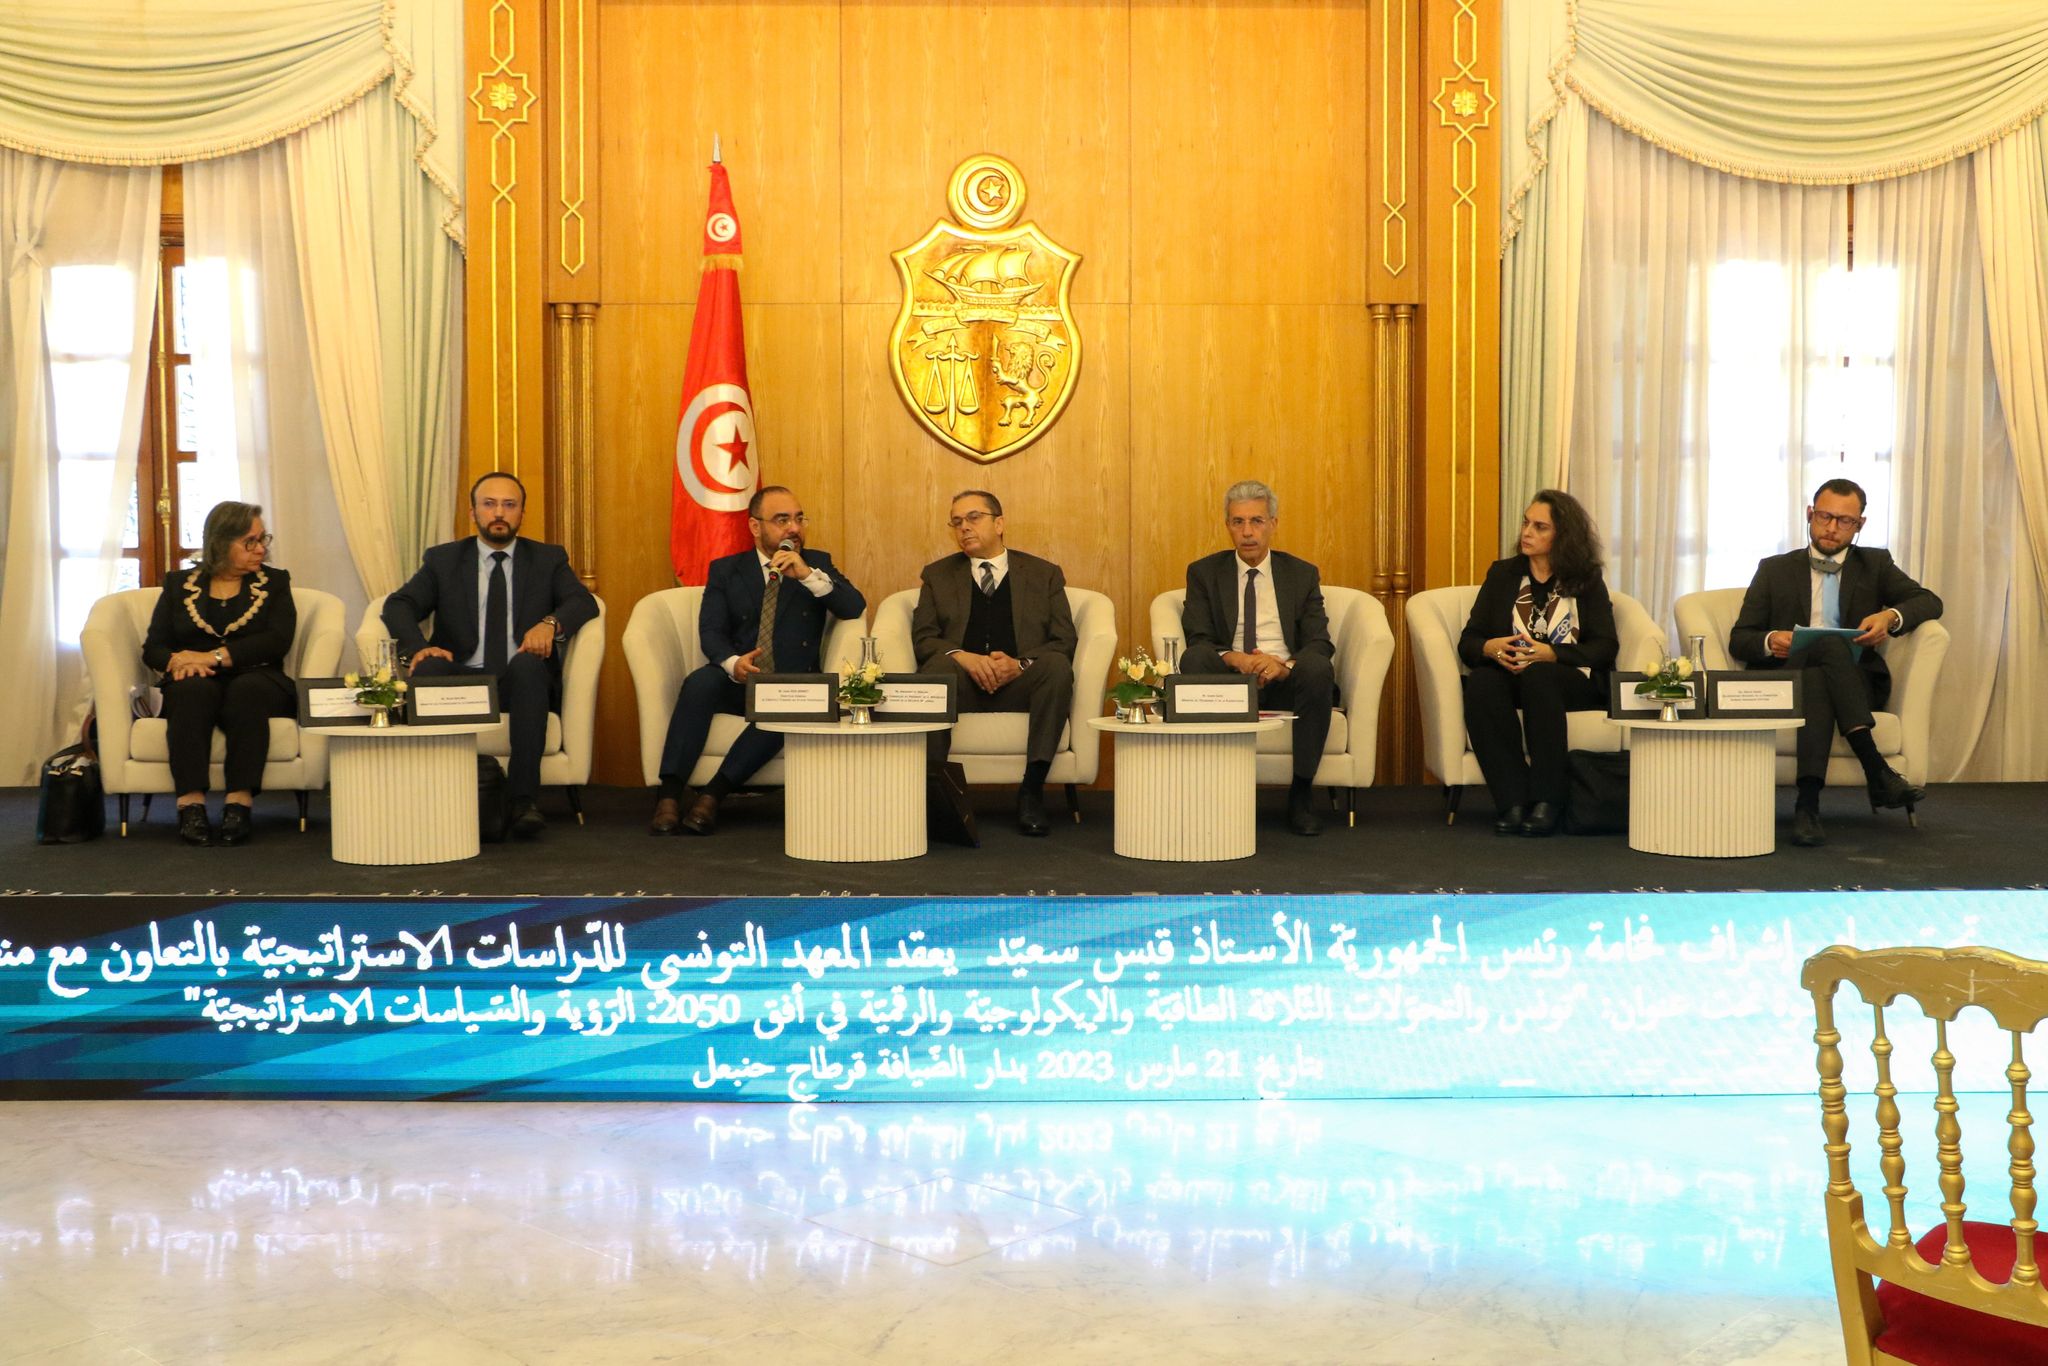 في ندوة "تونس والتحولات الثلاثة الطاقية والإيكولوجية والرقمية في أفق 2050" .. طرح الرؤية والسياسات الإستراتيجية.. وضبط رهانات تفرضها التوازنات العالمية الجديد